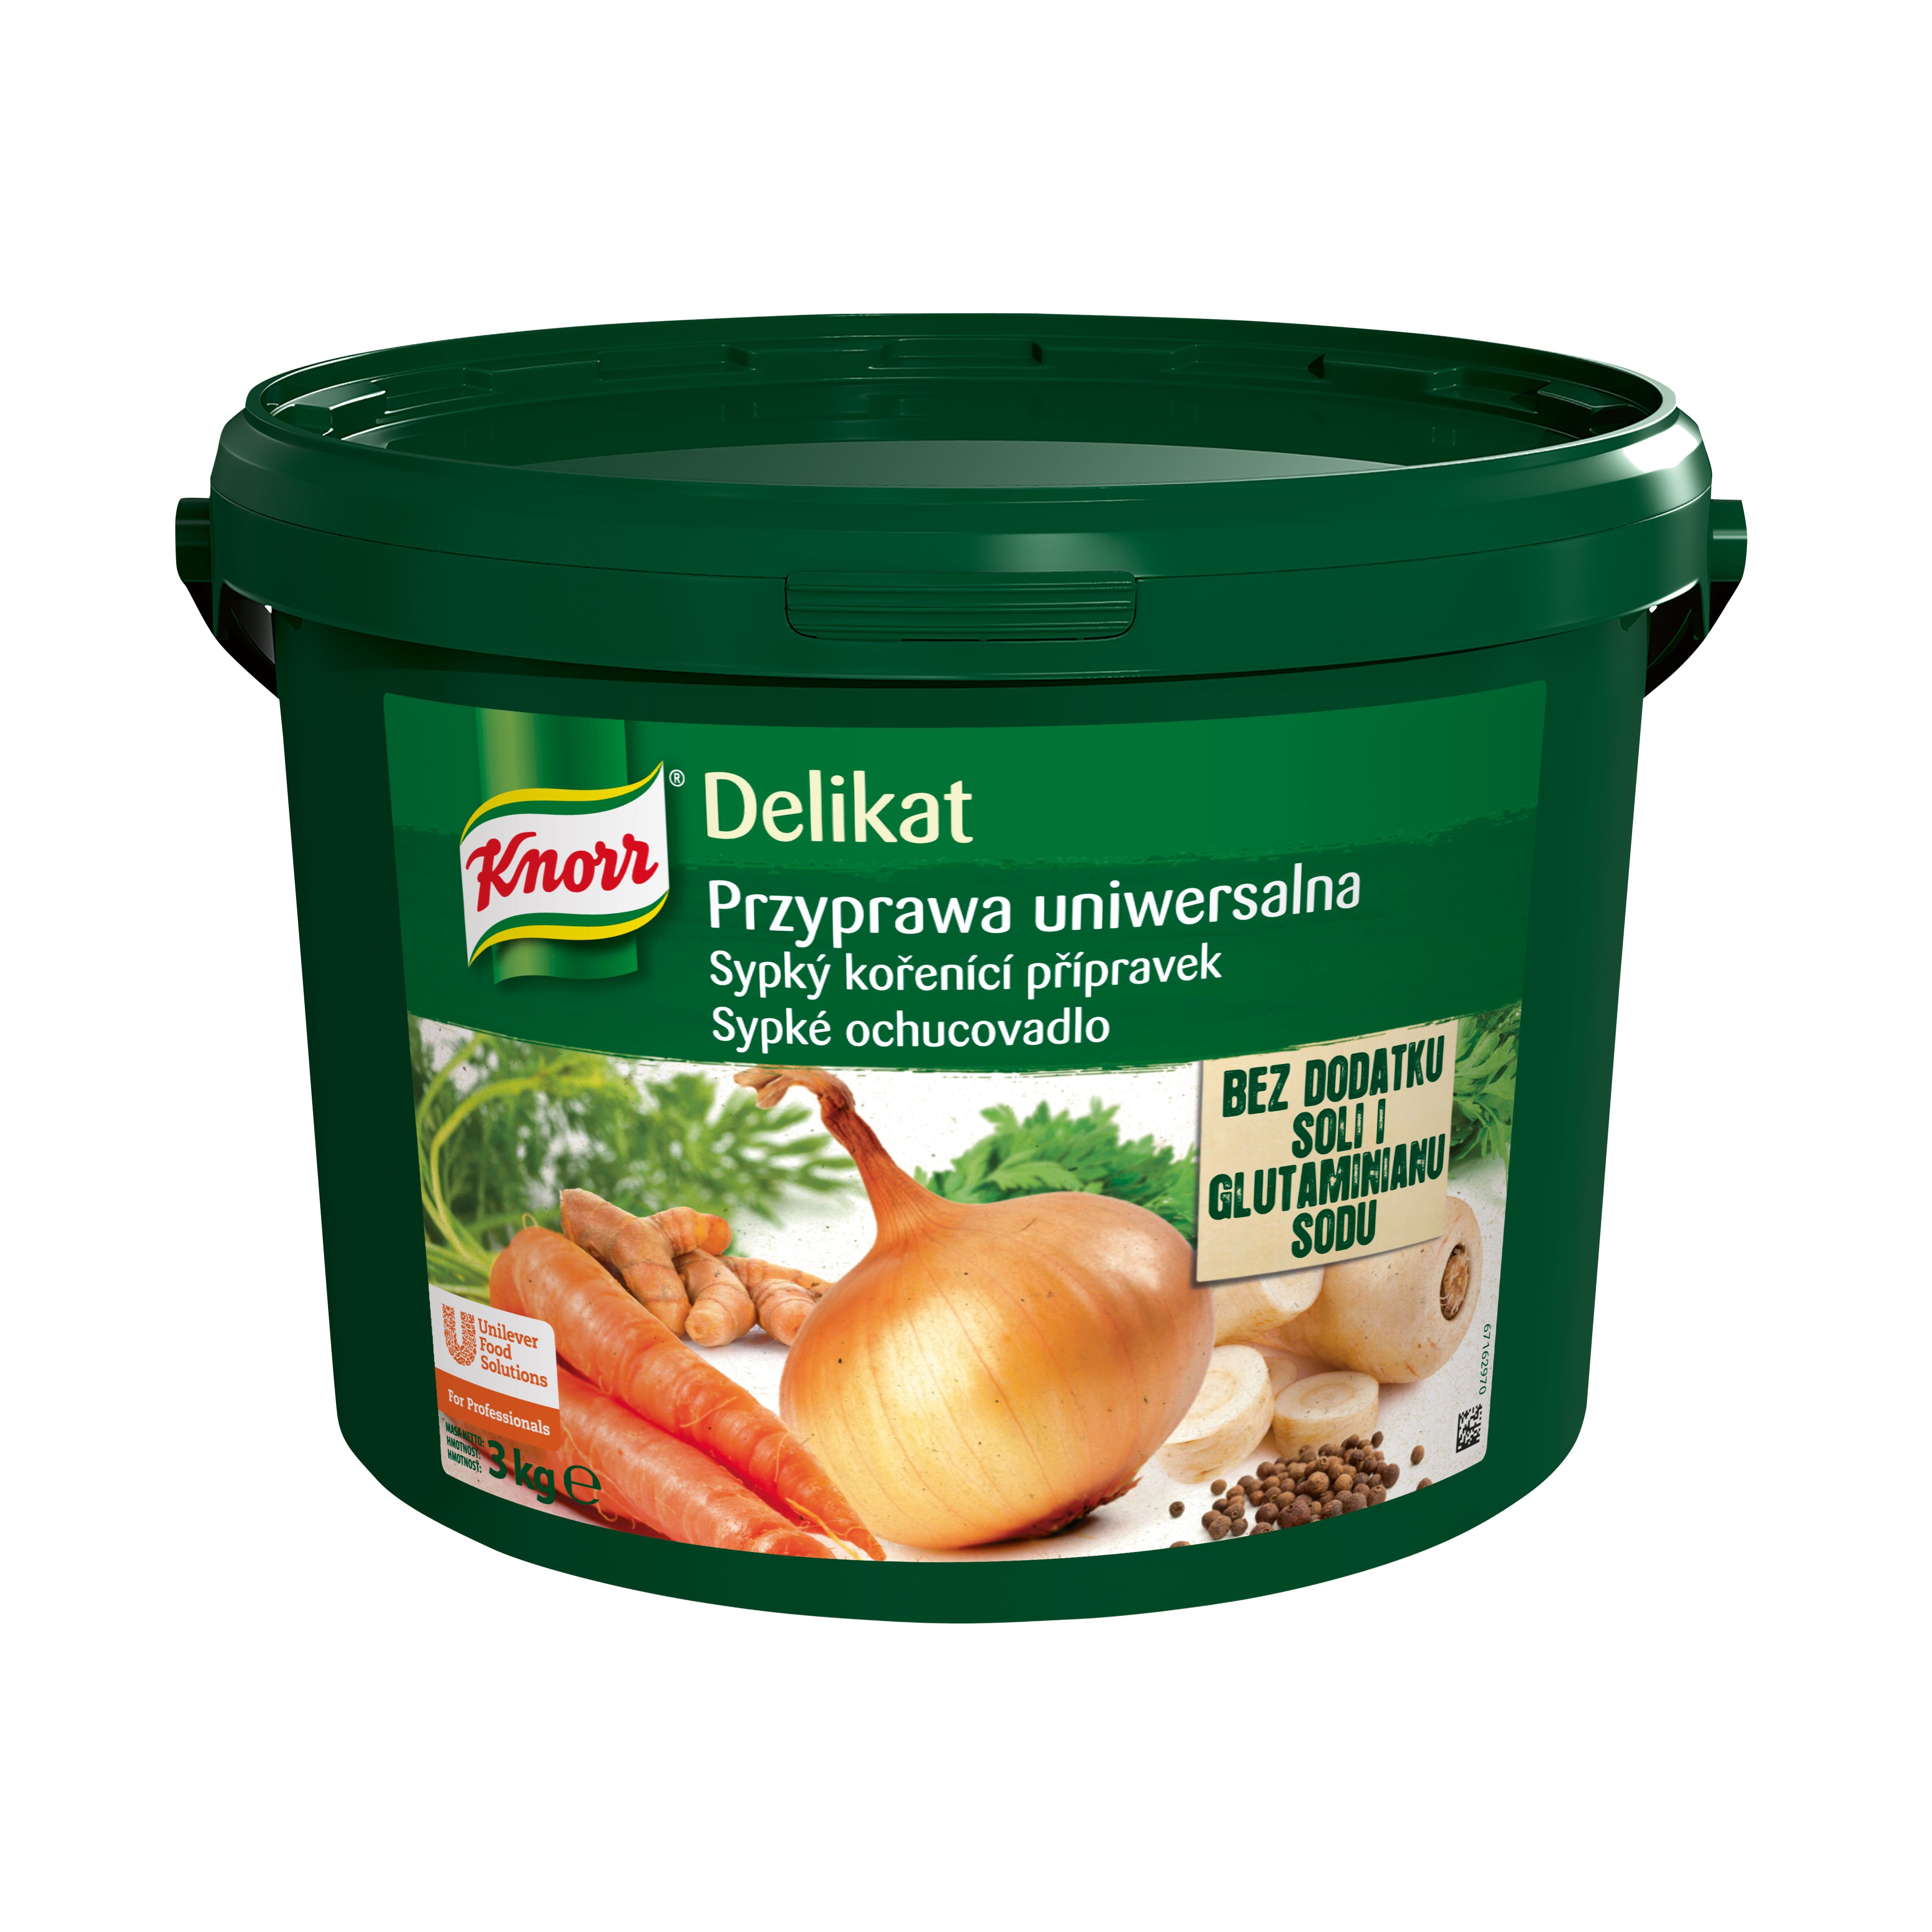 Knorr Delikat Przyprawa Uniwersalna w opakowaniu 3 kg - Nowy Delikat wzbogaca smak szkolnego menu i spełnia kryteria Rozporządzenia Ministra Zdrowia*